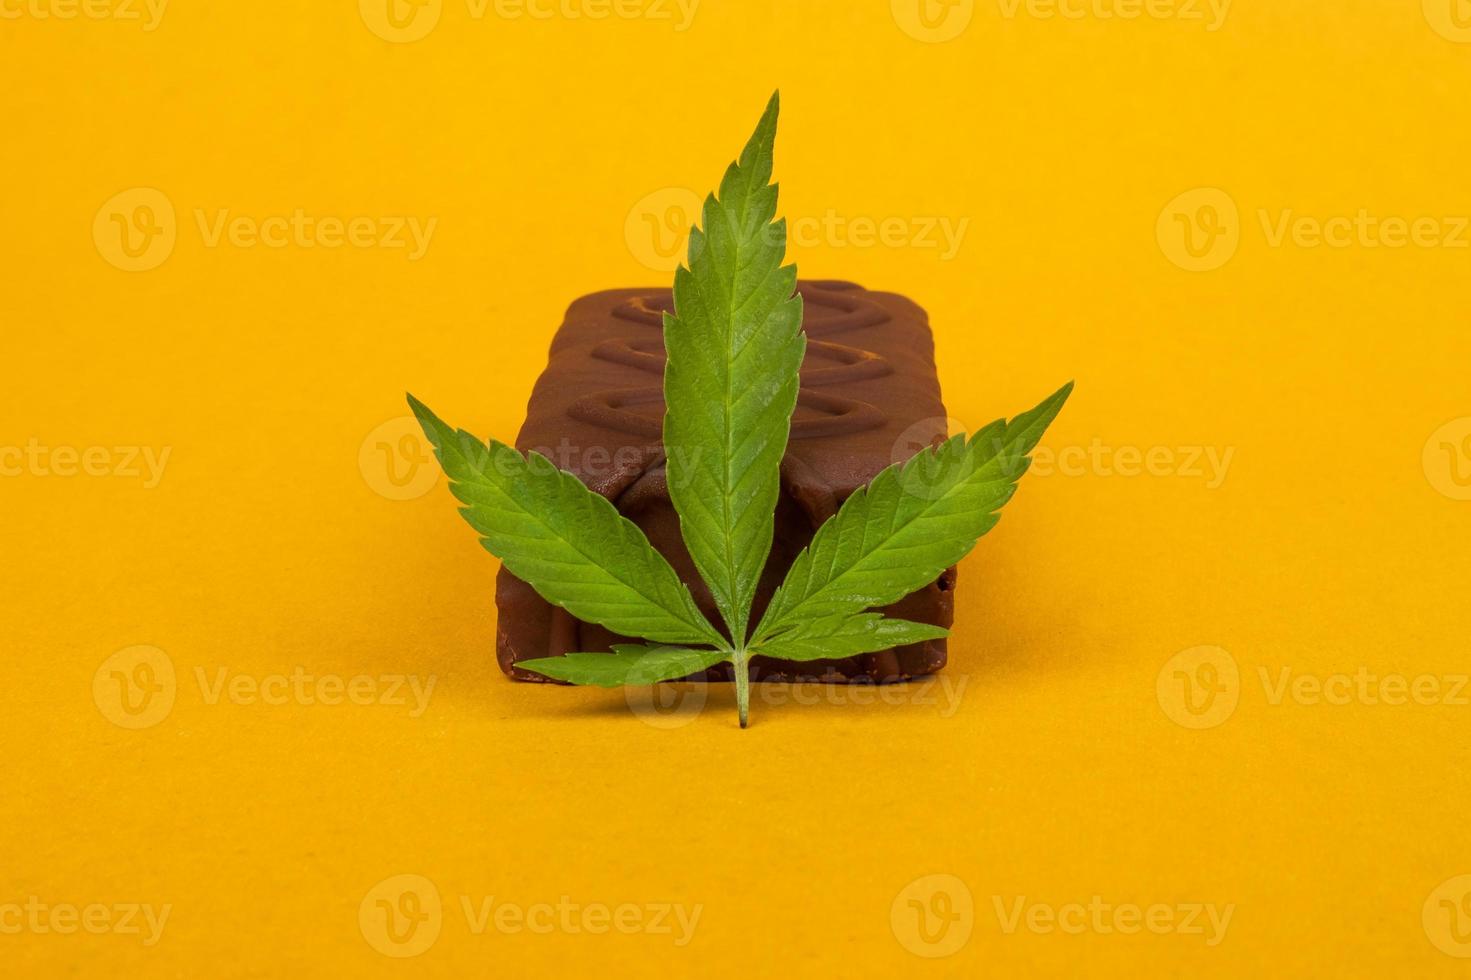 caramelos de chocolate y una hoja de marihuana sobre fondo amarillo belleza. caramelos dulces con la adición de aceite de hachís foto